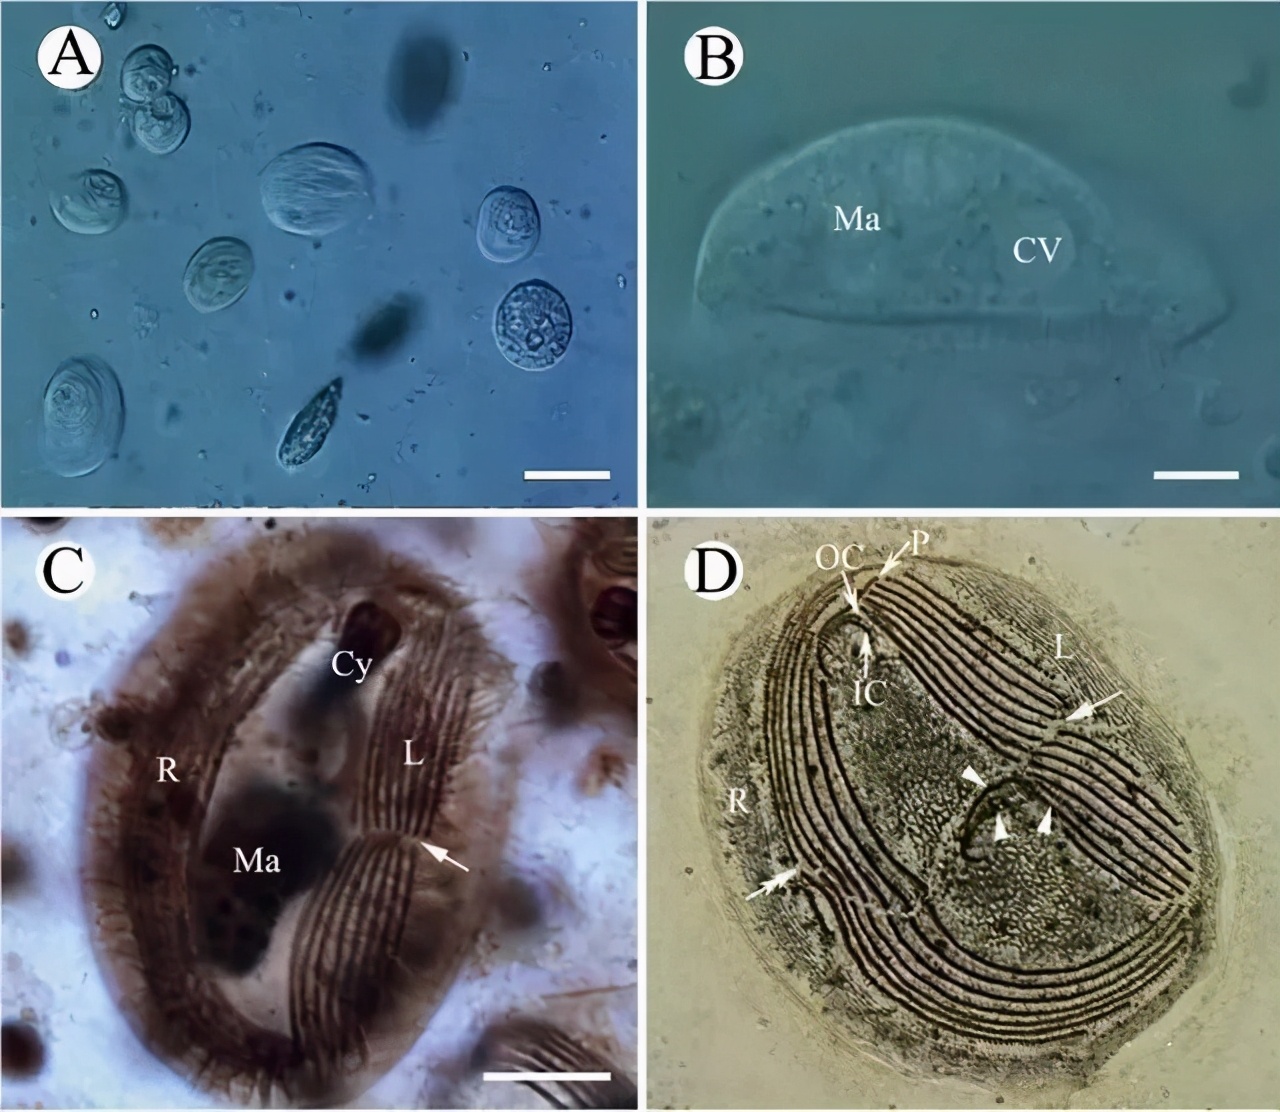 4,杯体虫:鳃丝压片镜检即可确诊;5,指环虫:鱼体分泌大量黏液,鳃瓣浮肿